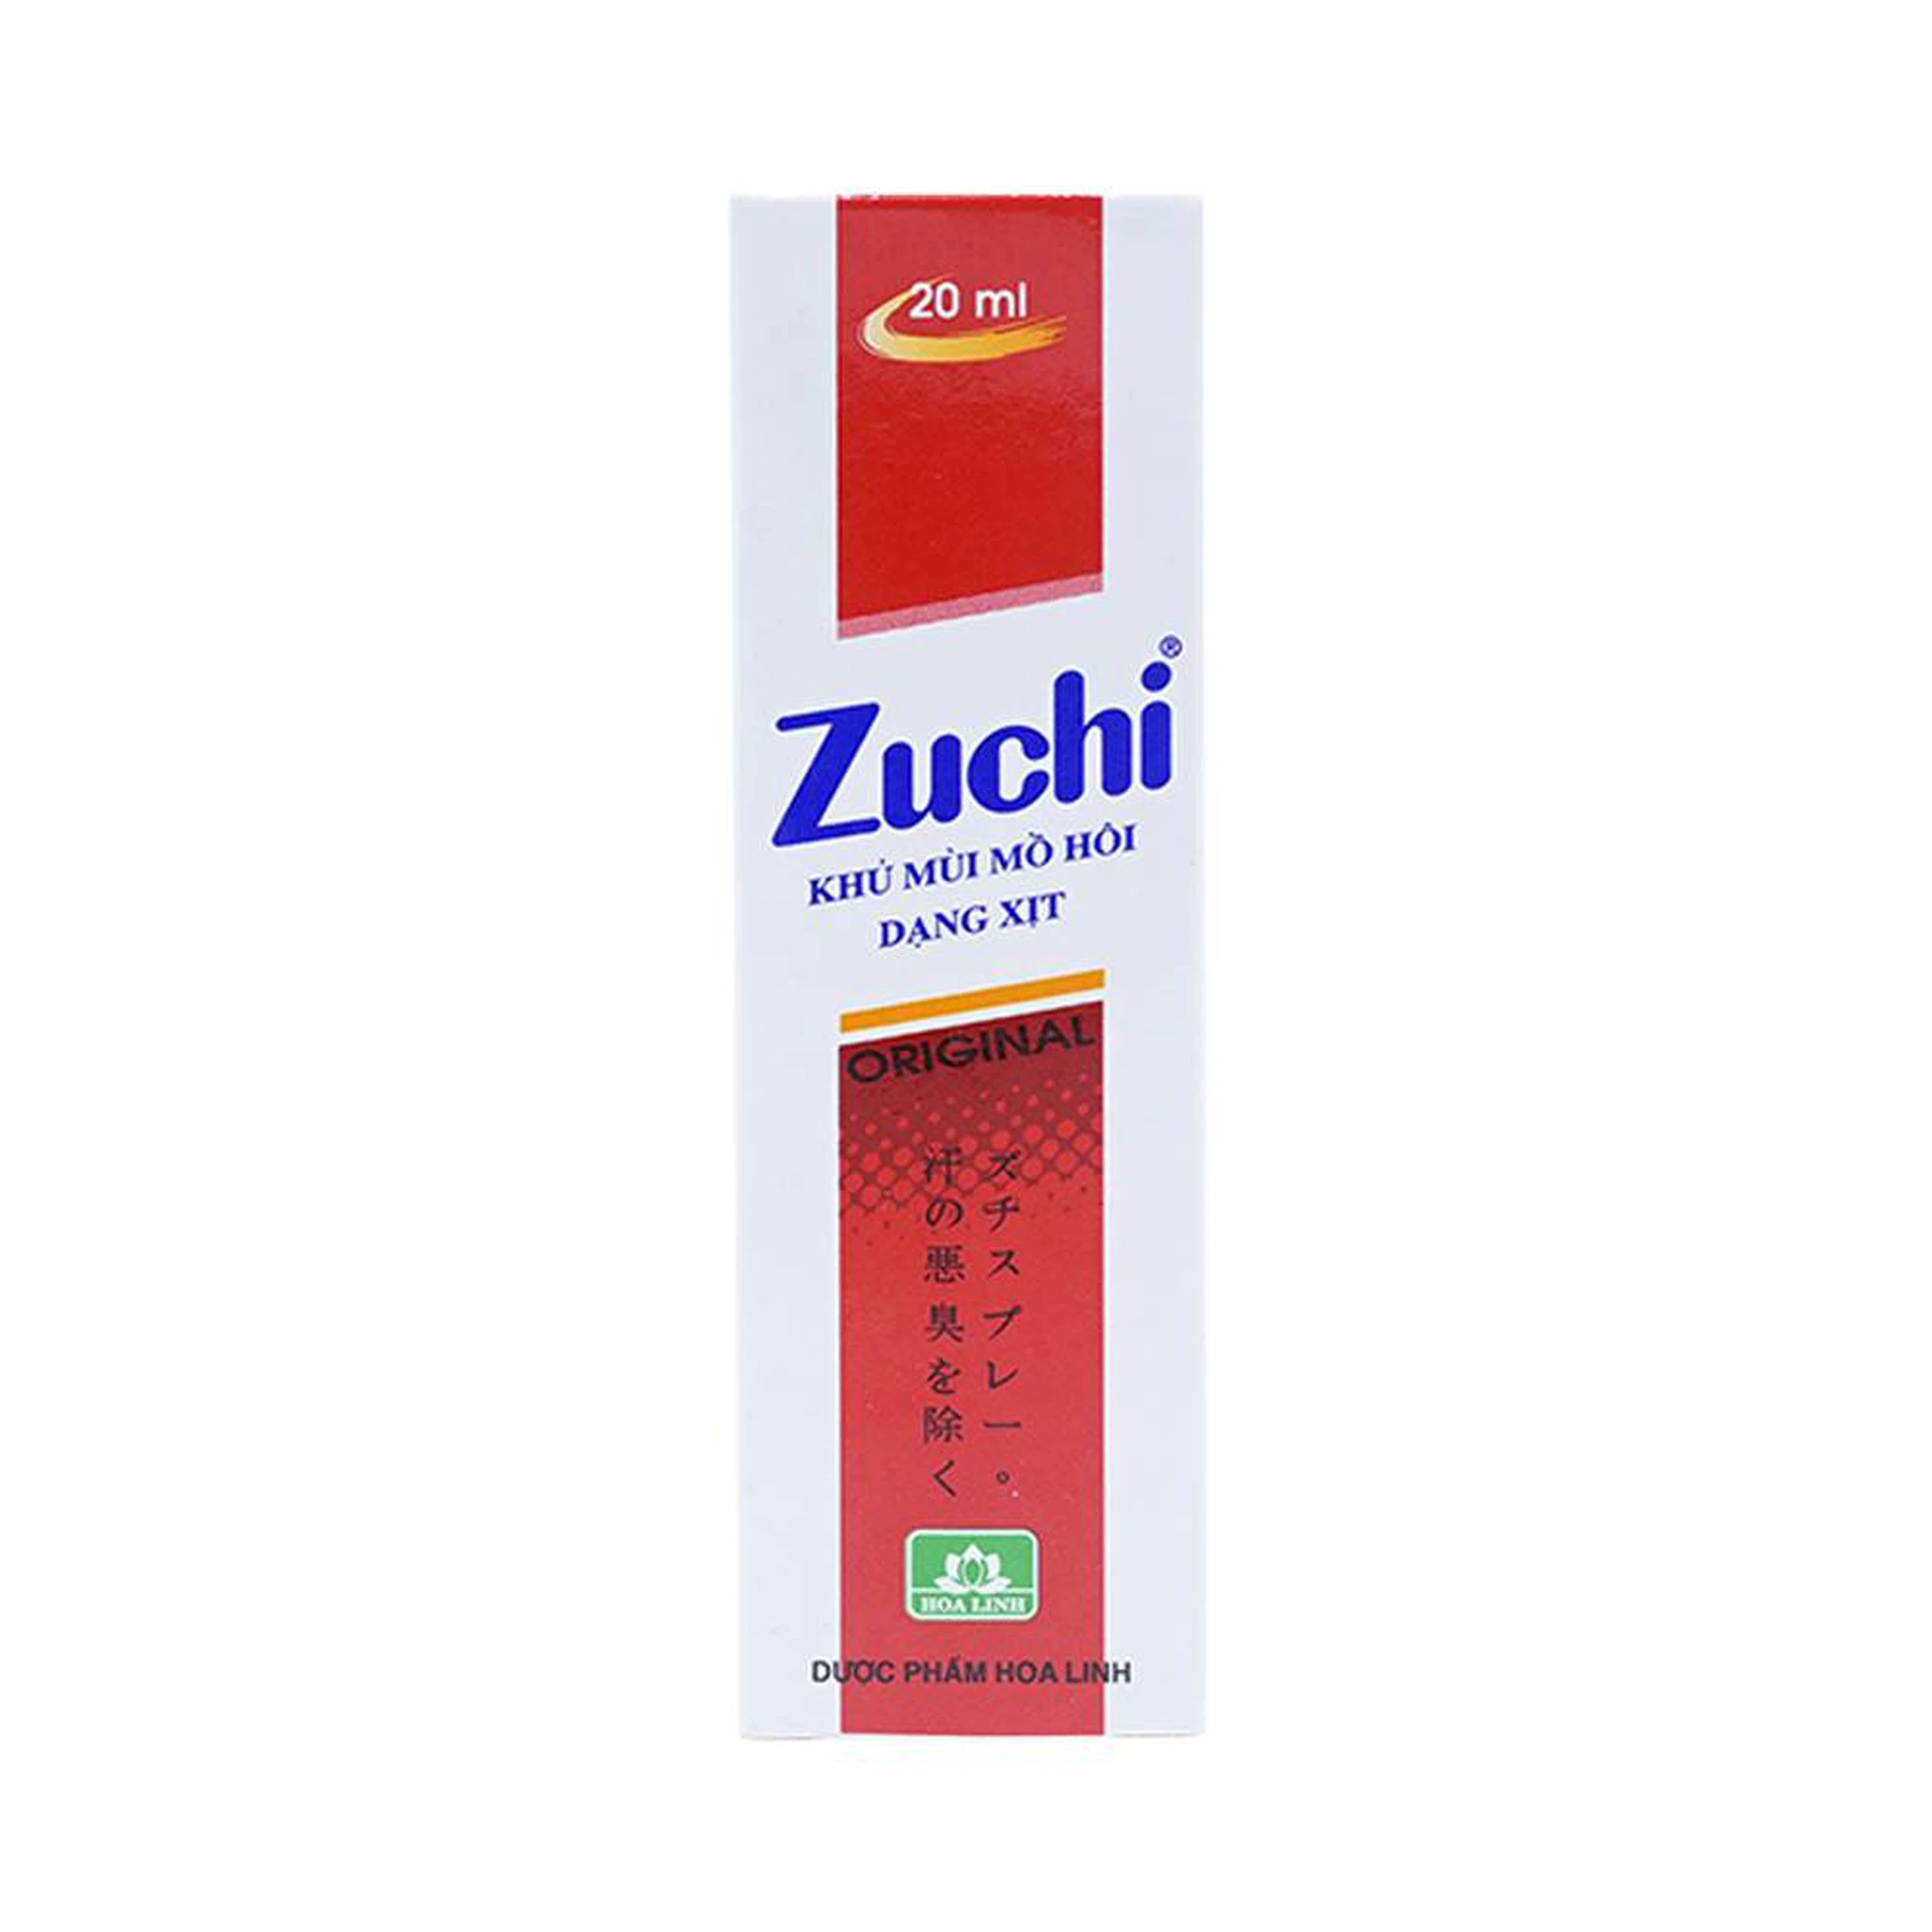 Chai xịt Zuchi Hoa Linh khử mùi hôi cơ thể (20ml)